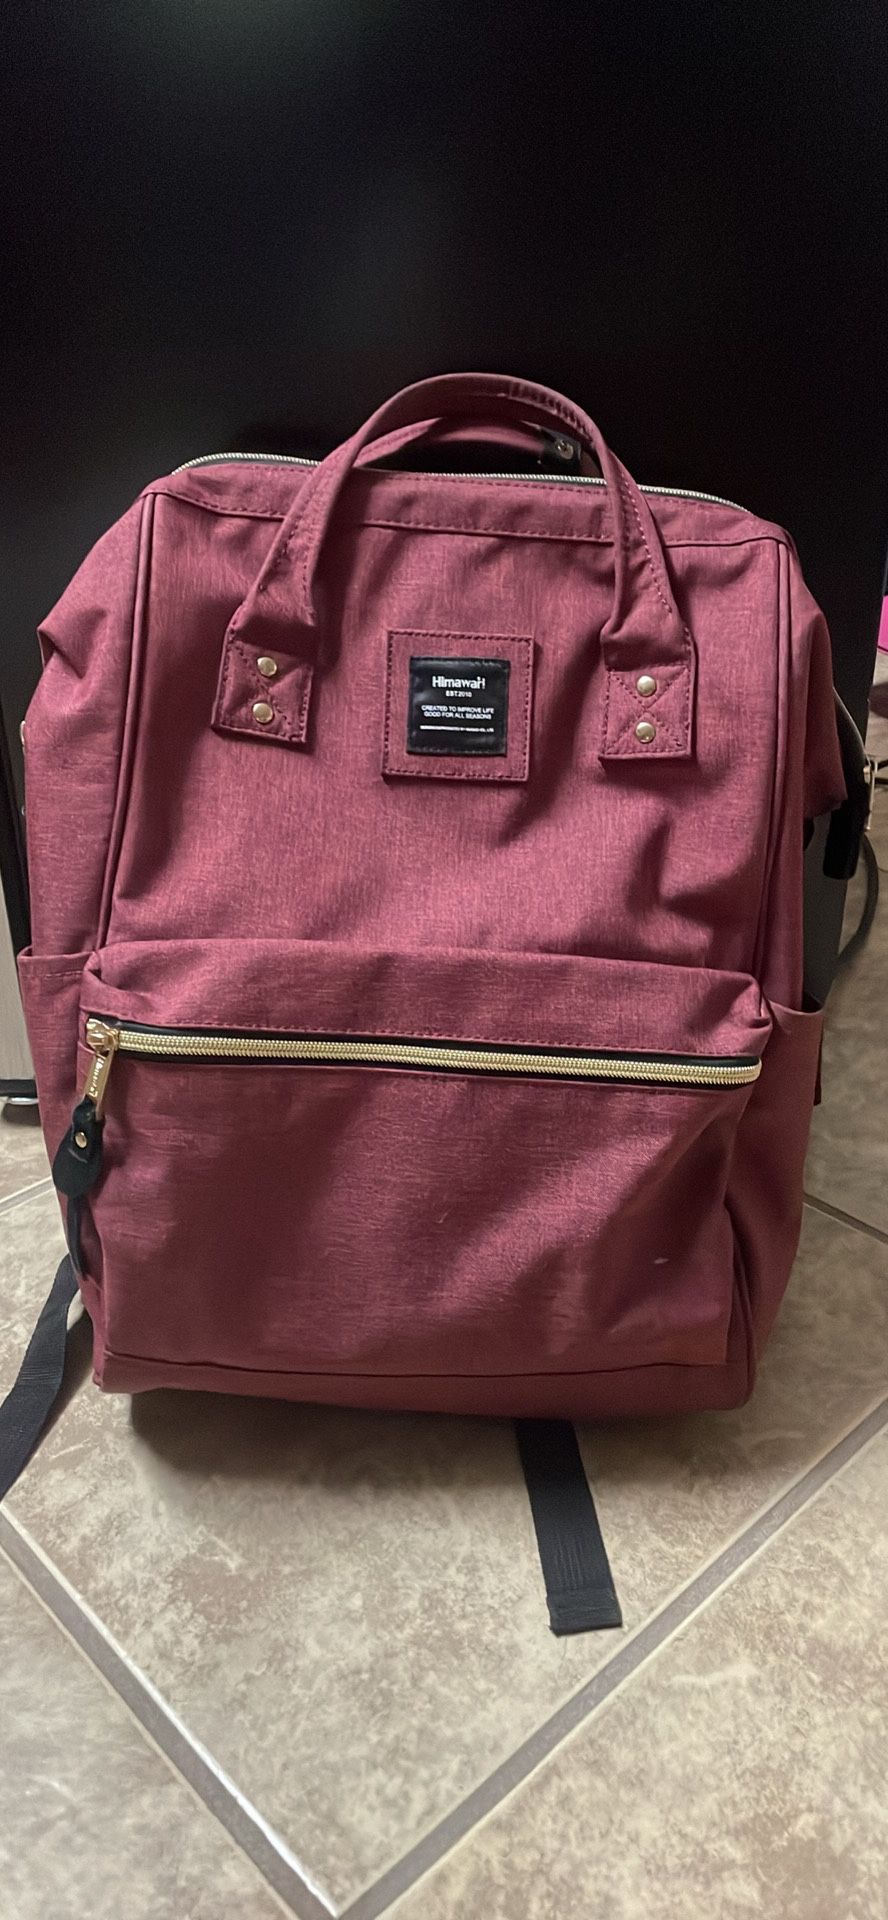 Himawarii backpack 